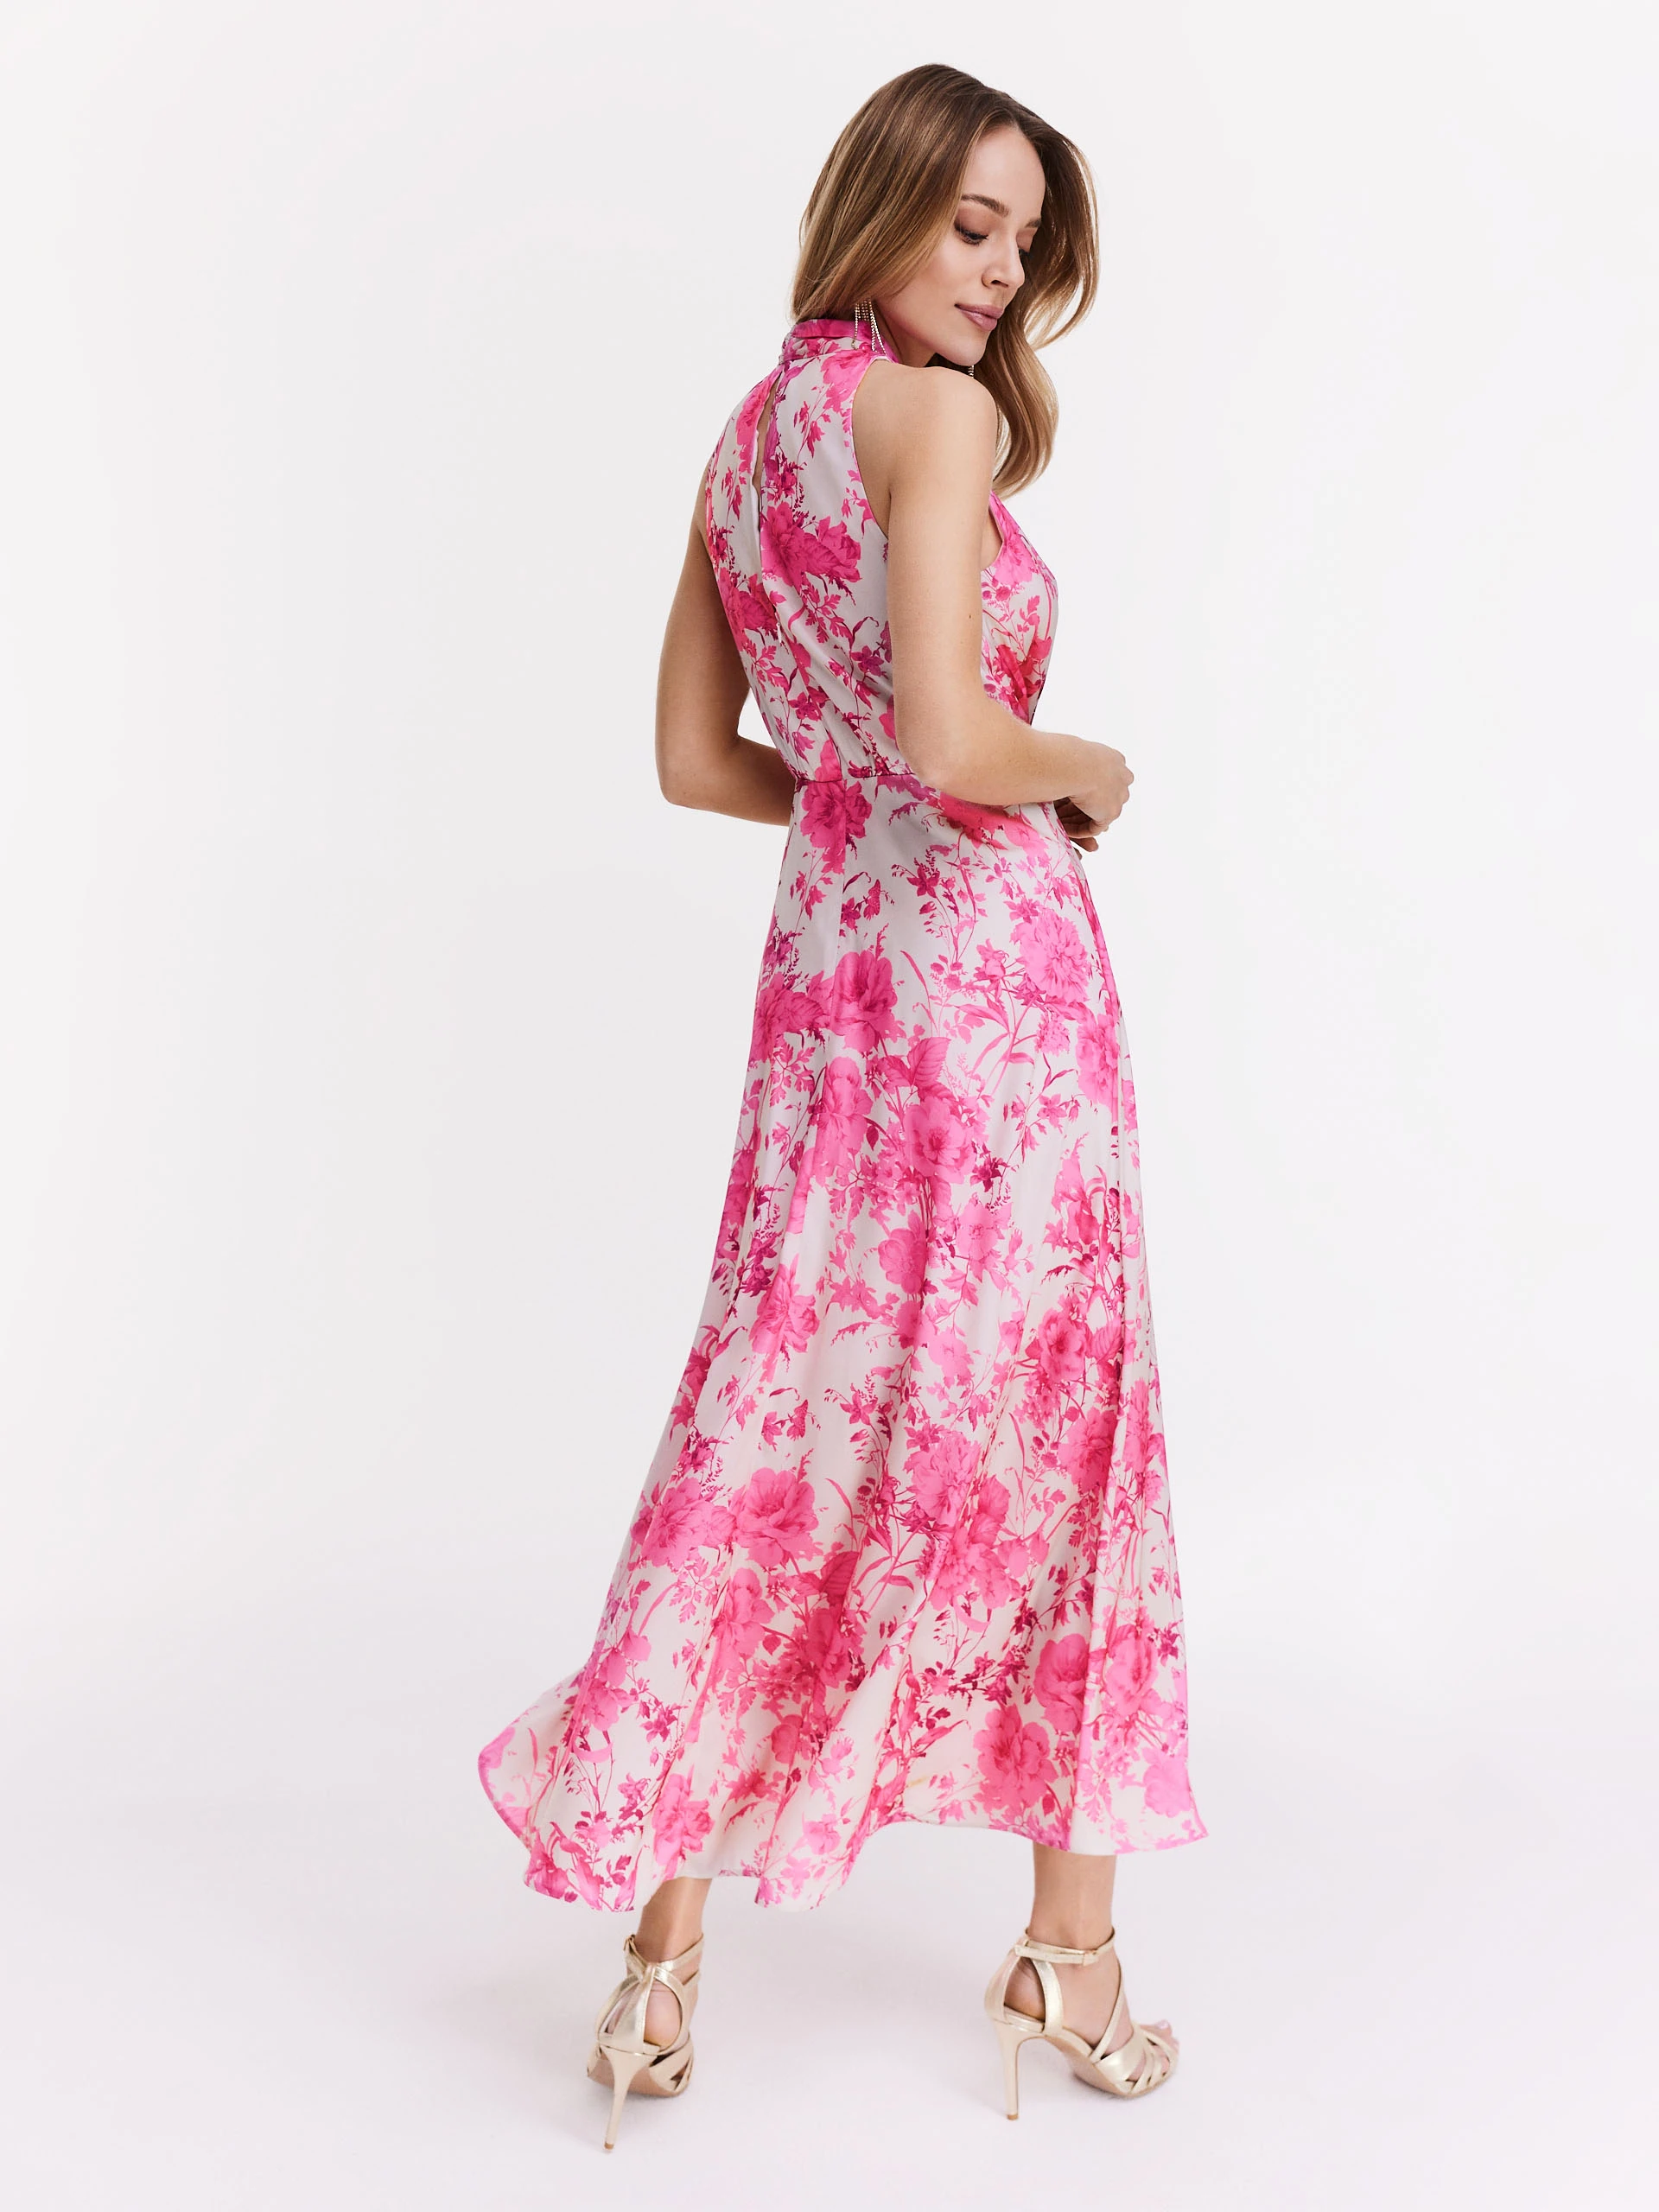 Kremowa sukienka w różowe kwiaty